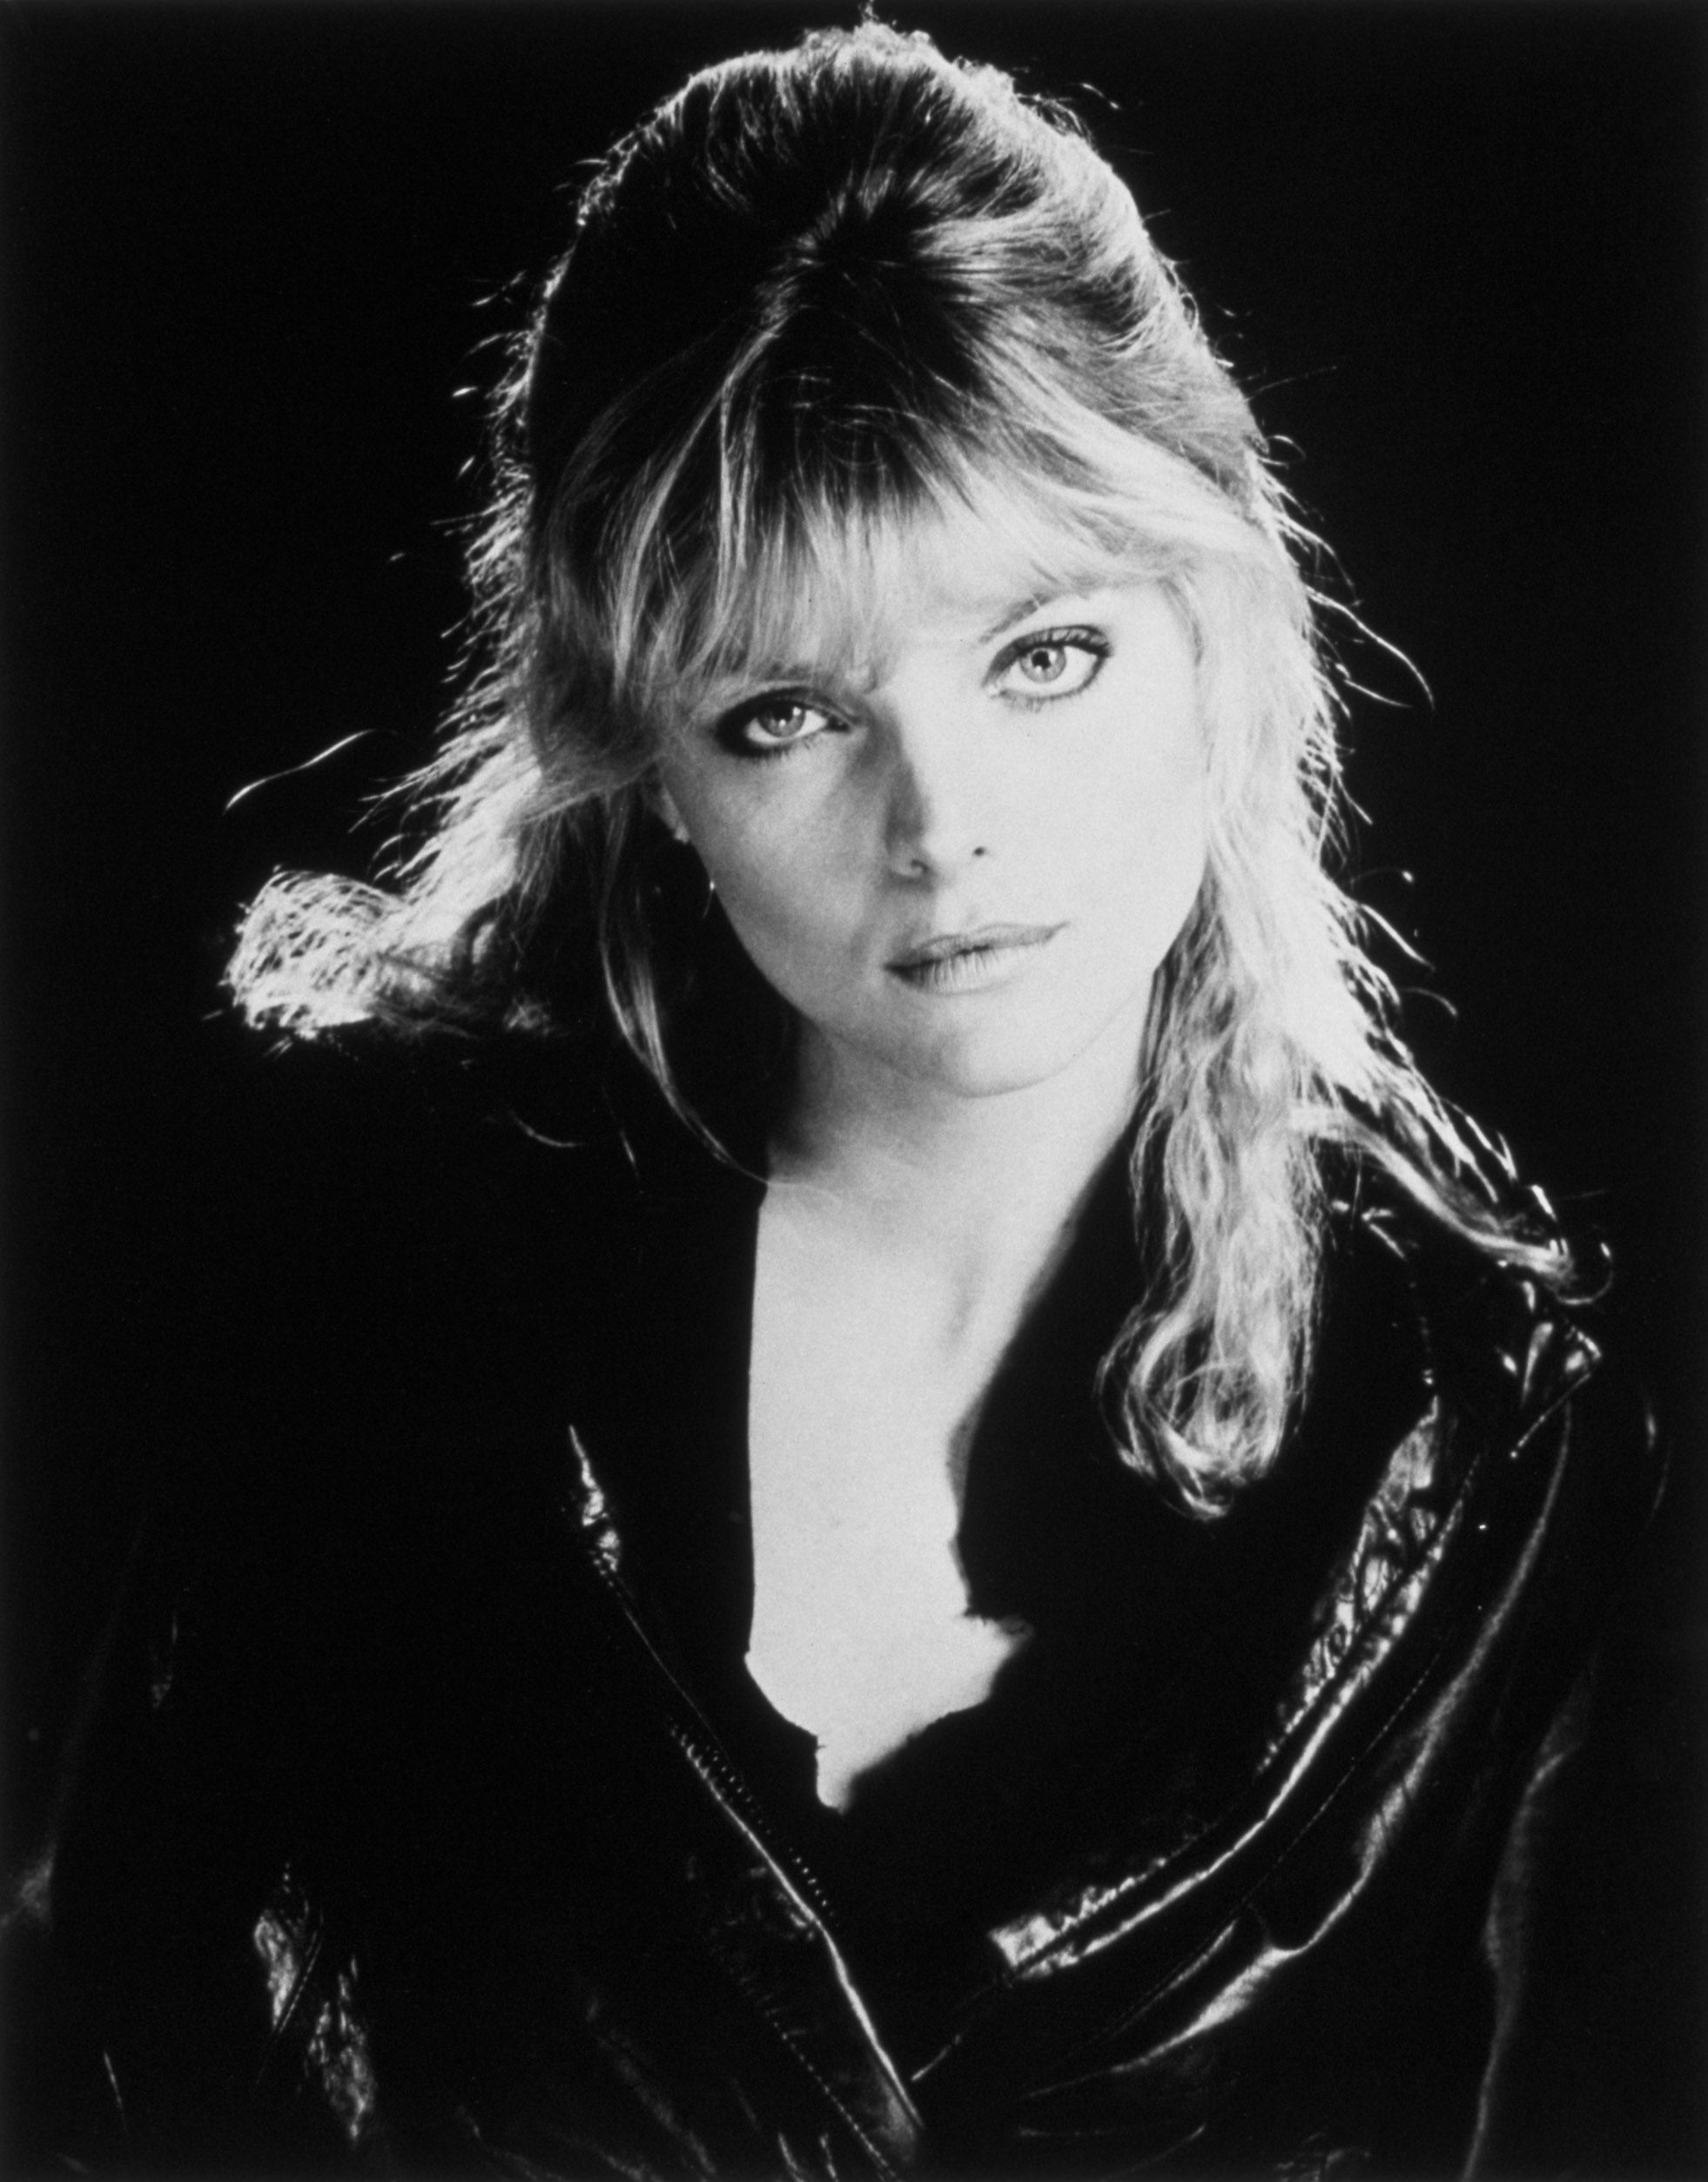 Michelle Pfeiffer photo 143 of 199 pics, wallpaper - photo #300779 ...